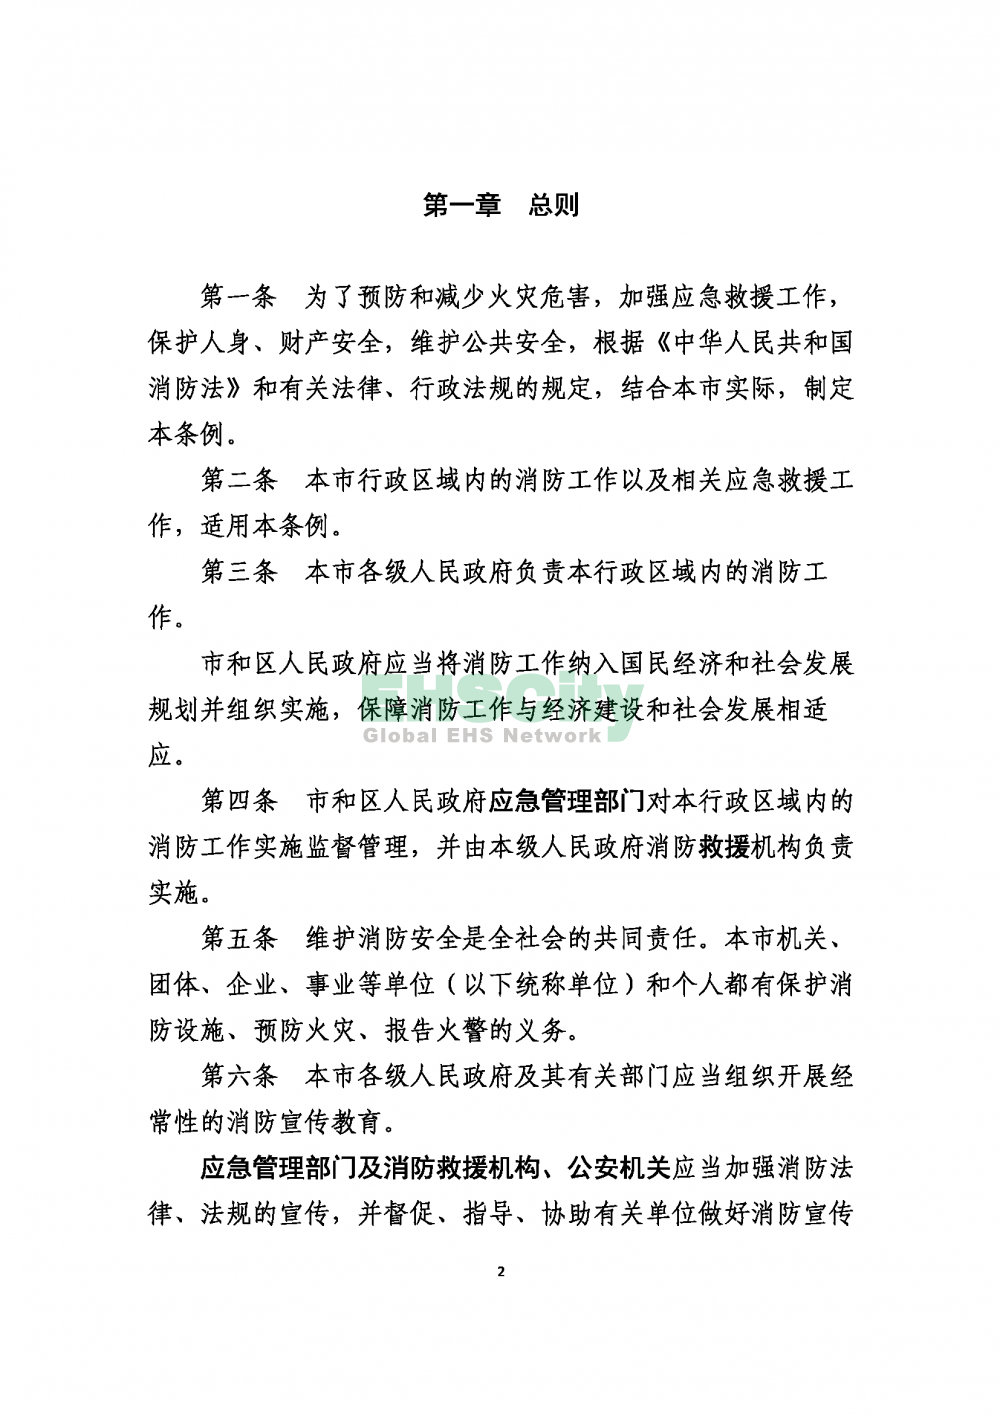 2020版上海消防条例_页面_02